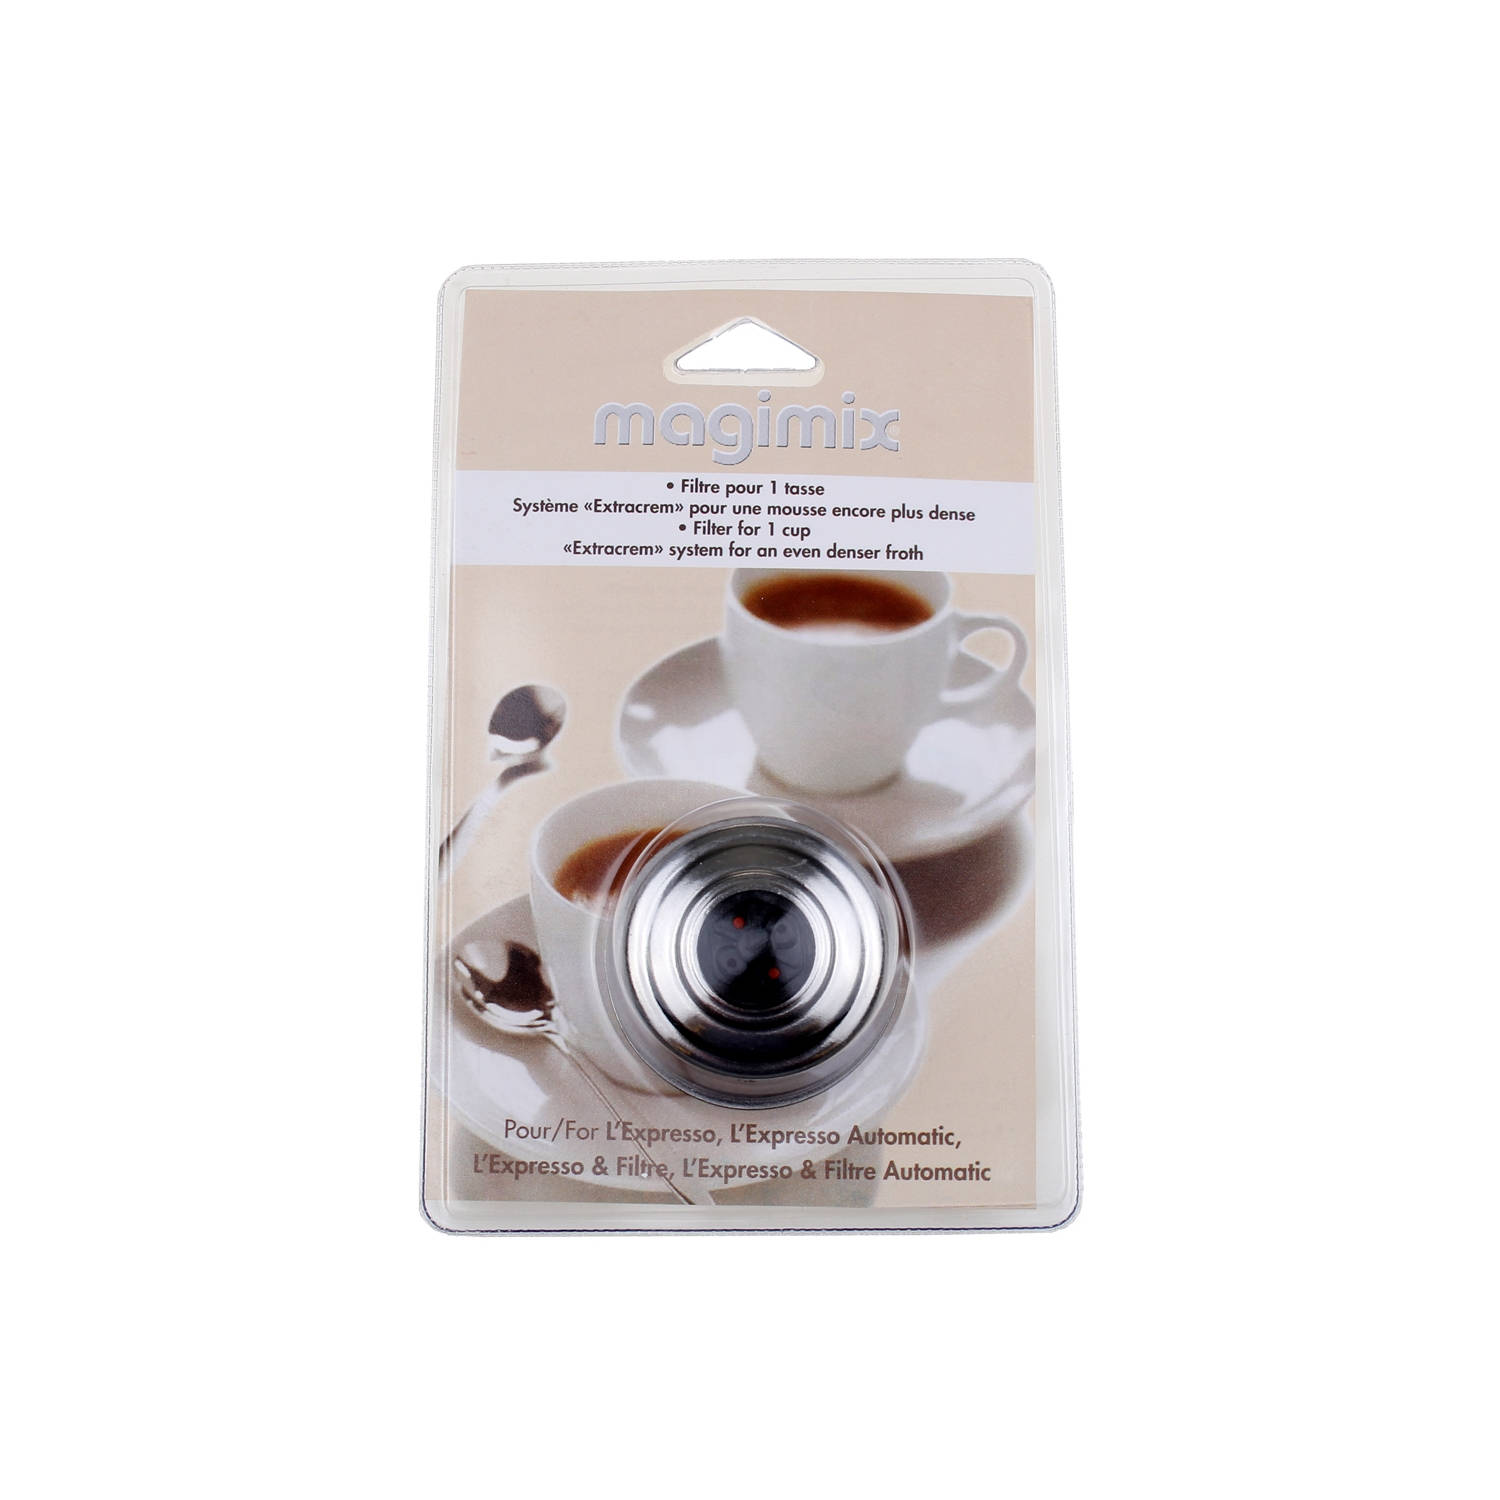 Magimix filterbakje voor l'espresso koffiezetapparaat 505458